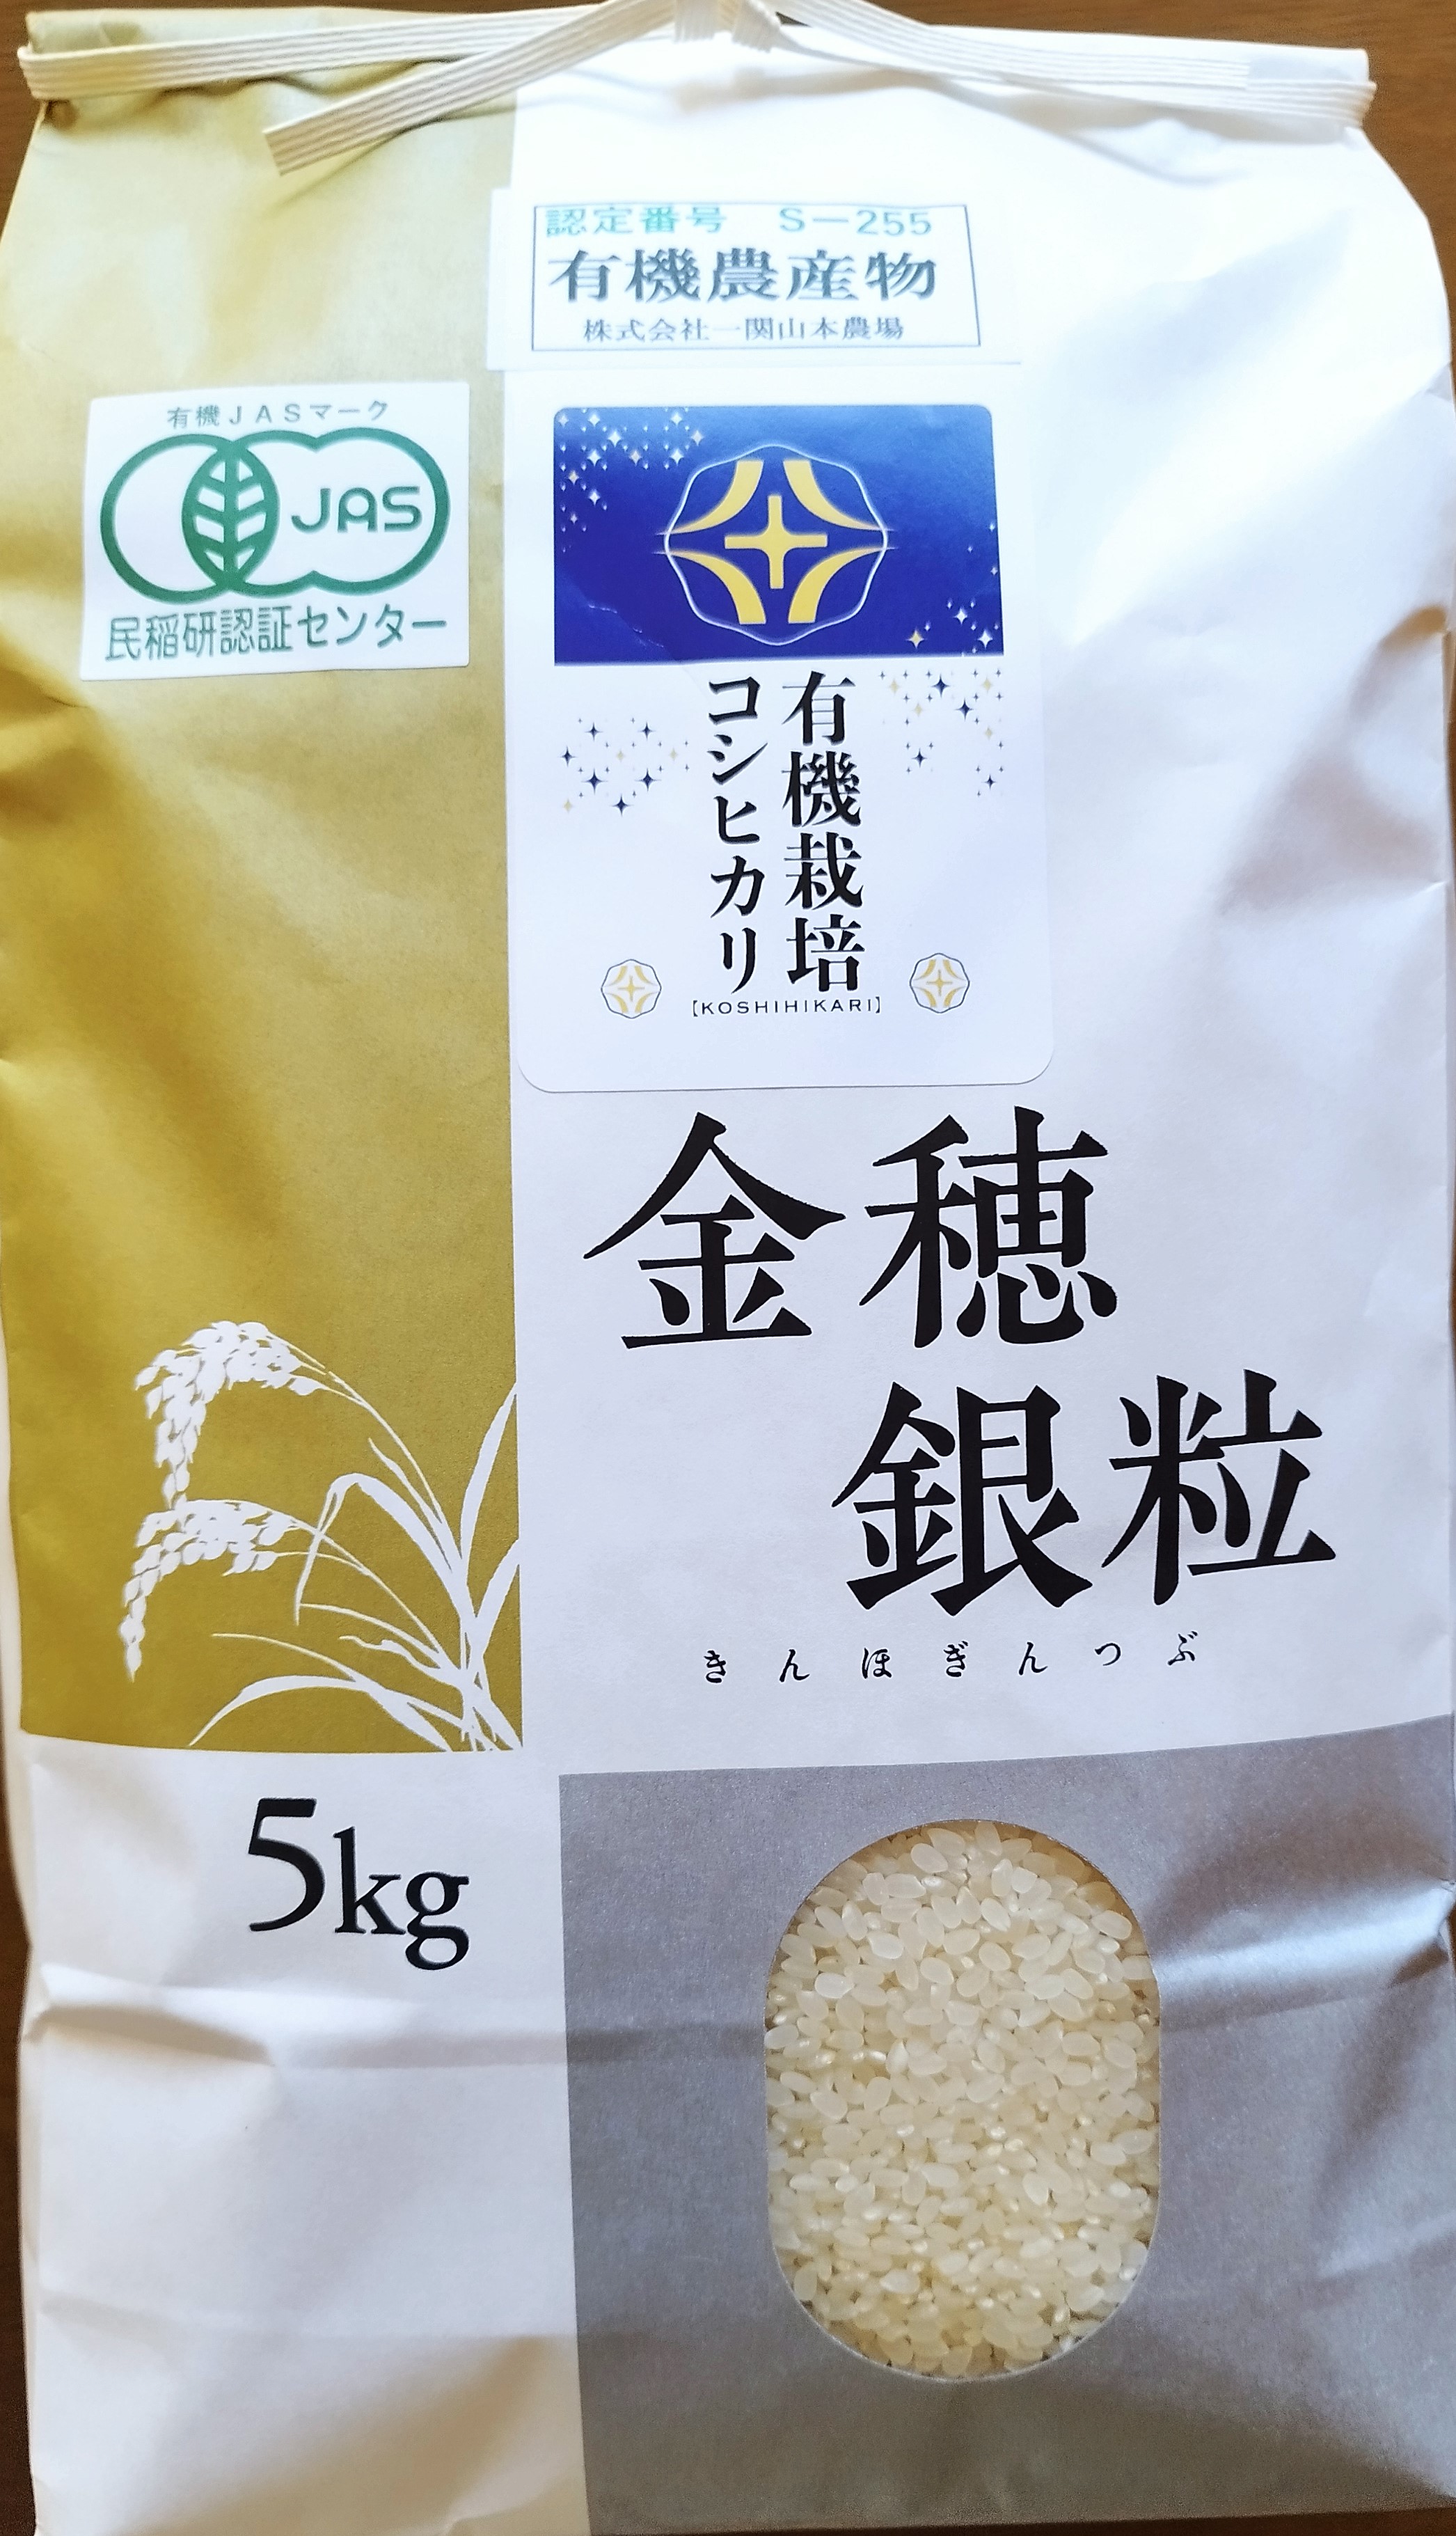 有機栽培米「コシヒカリ」